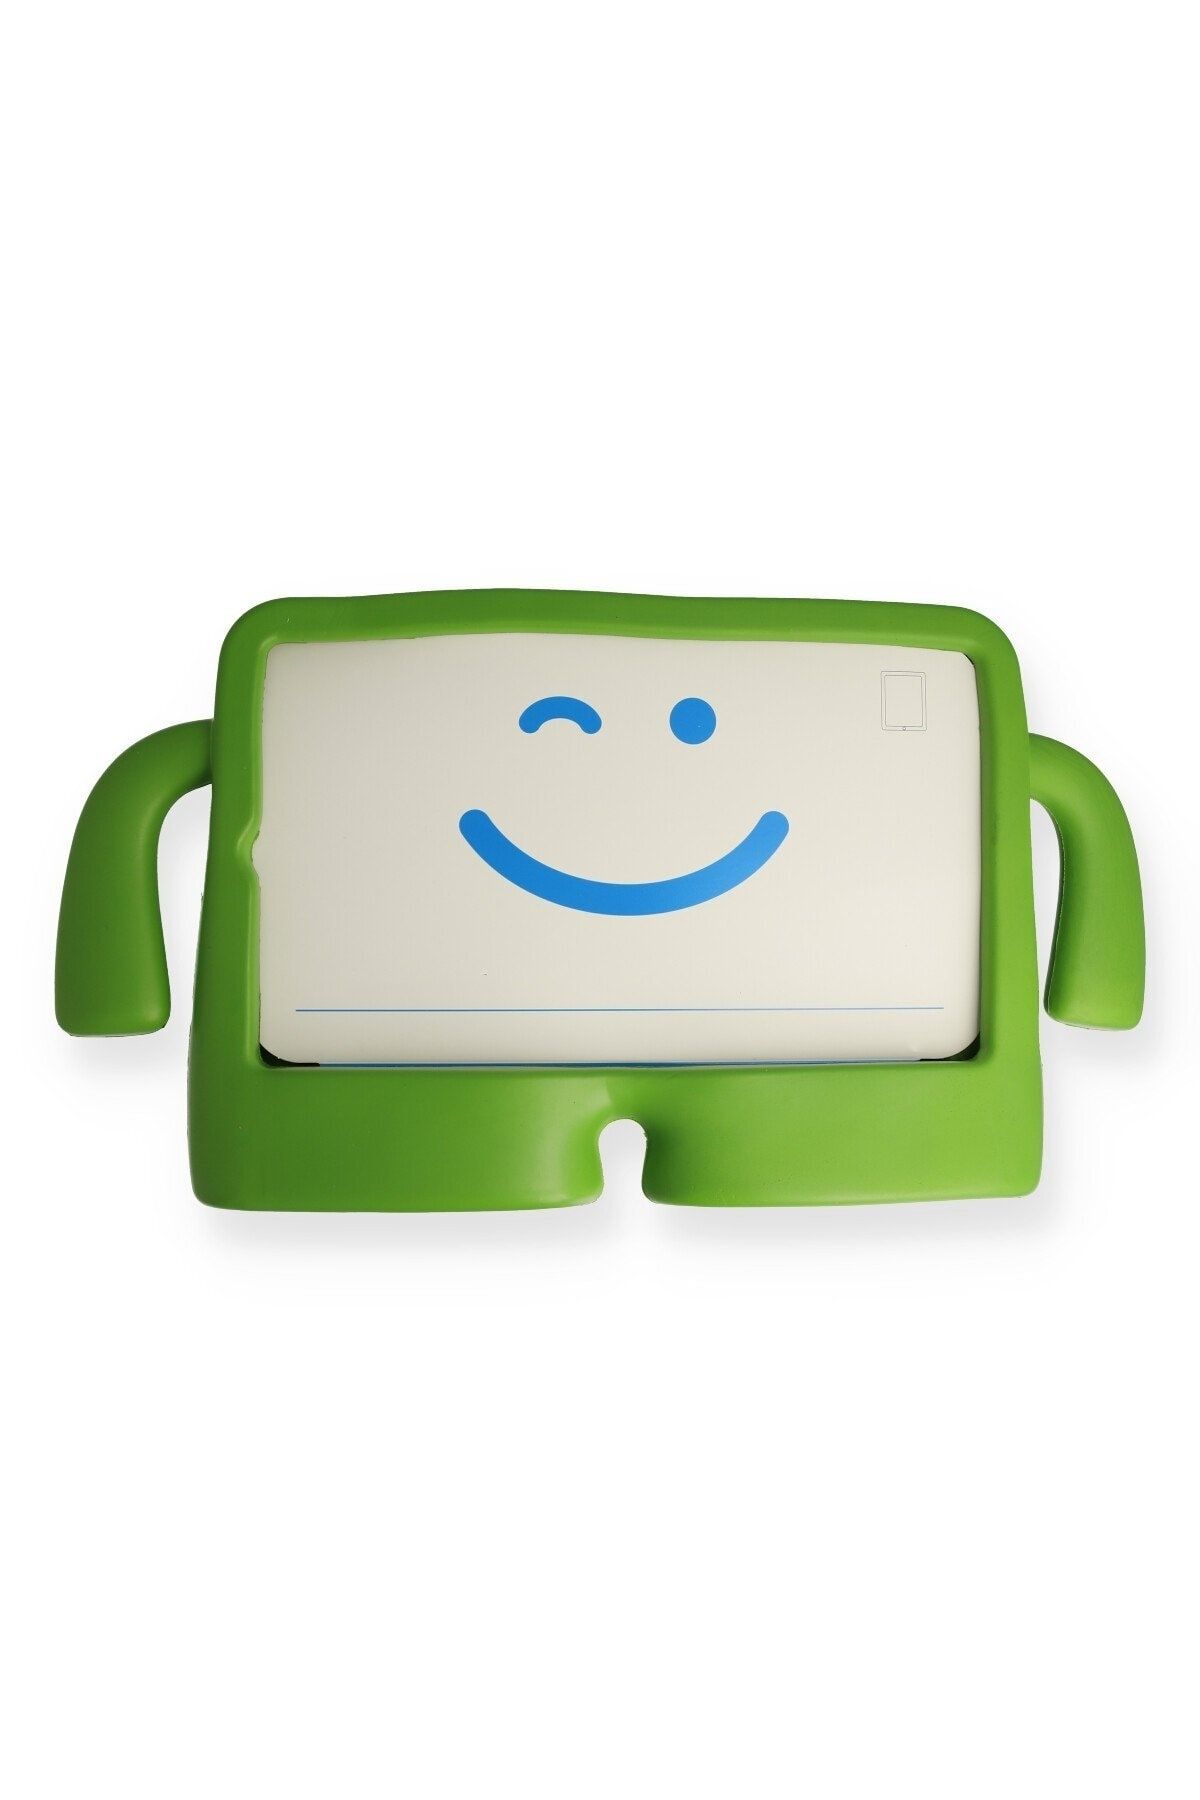 Bilişim Aksesuar Ipad 5 Air 9.7 Kılıf Karakter Tablet Silikon - Yeşil